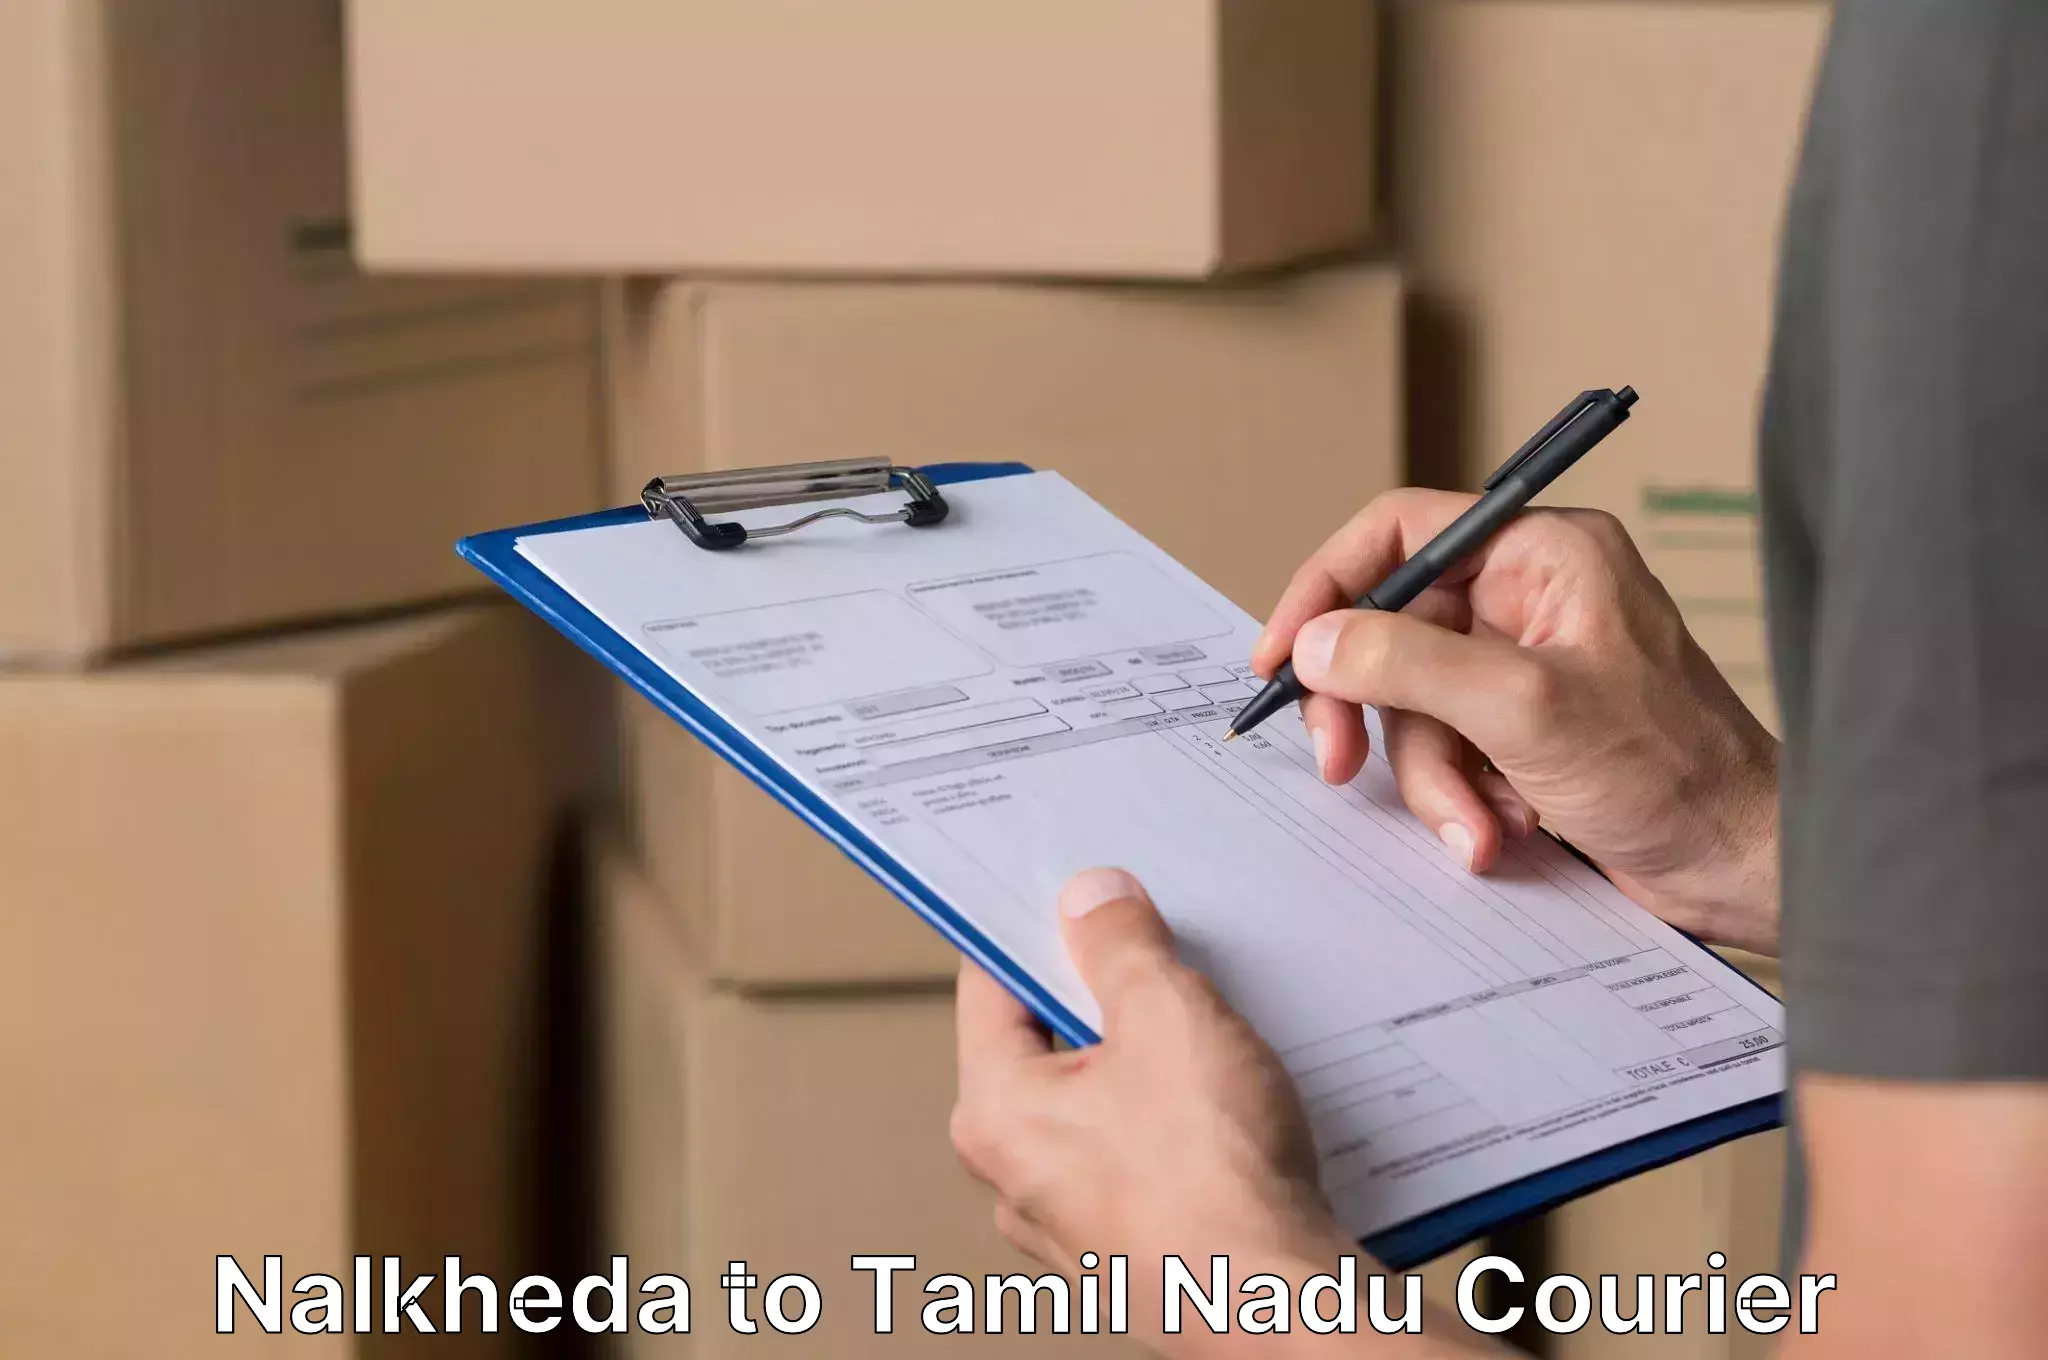 Furniture handling services in Nalkheda to Tamil Nadu